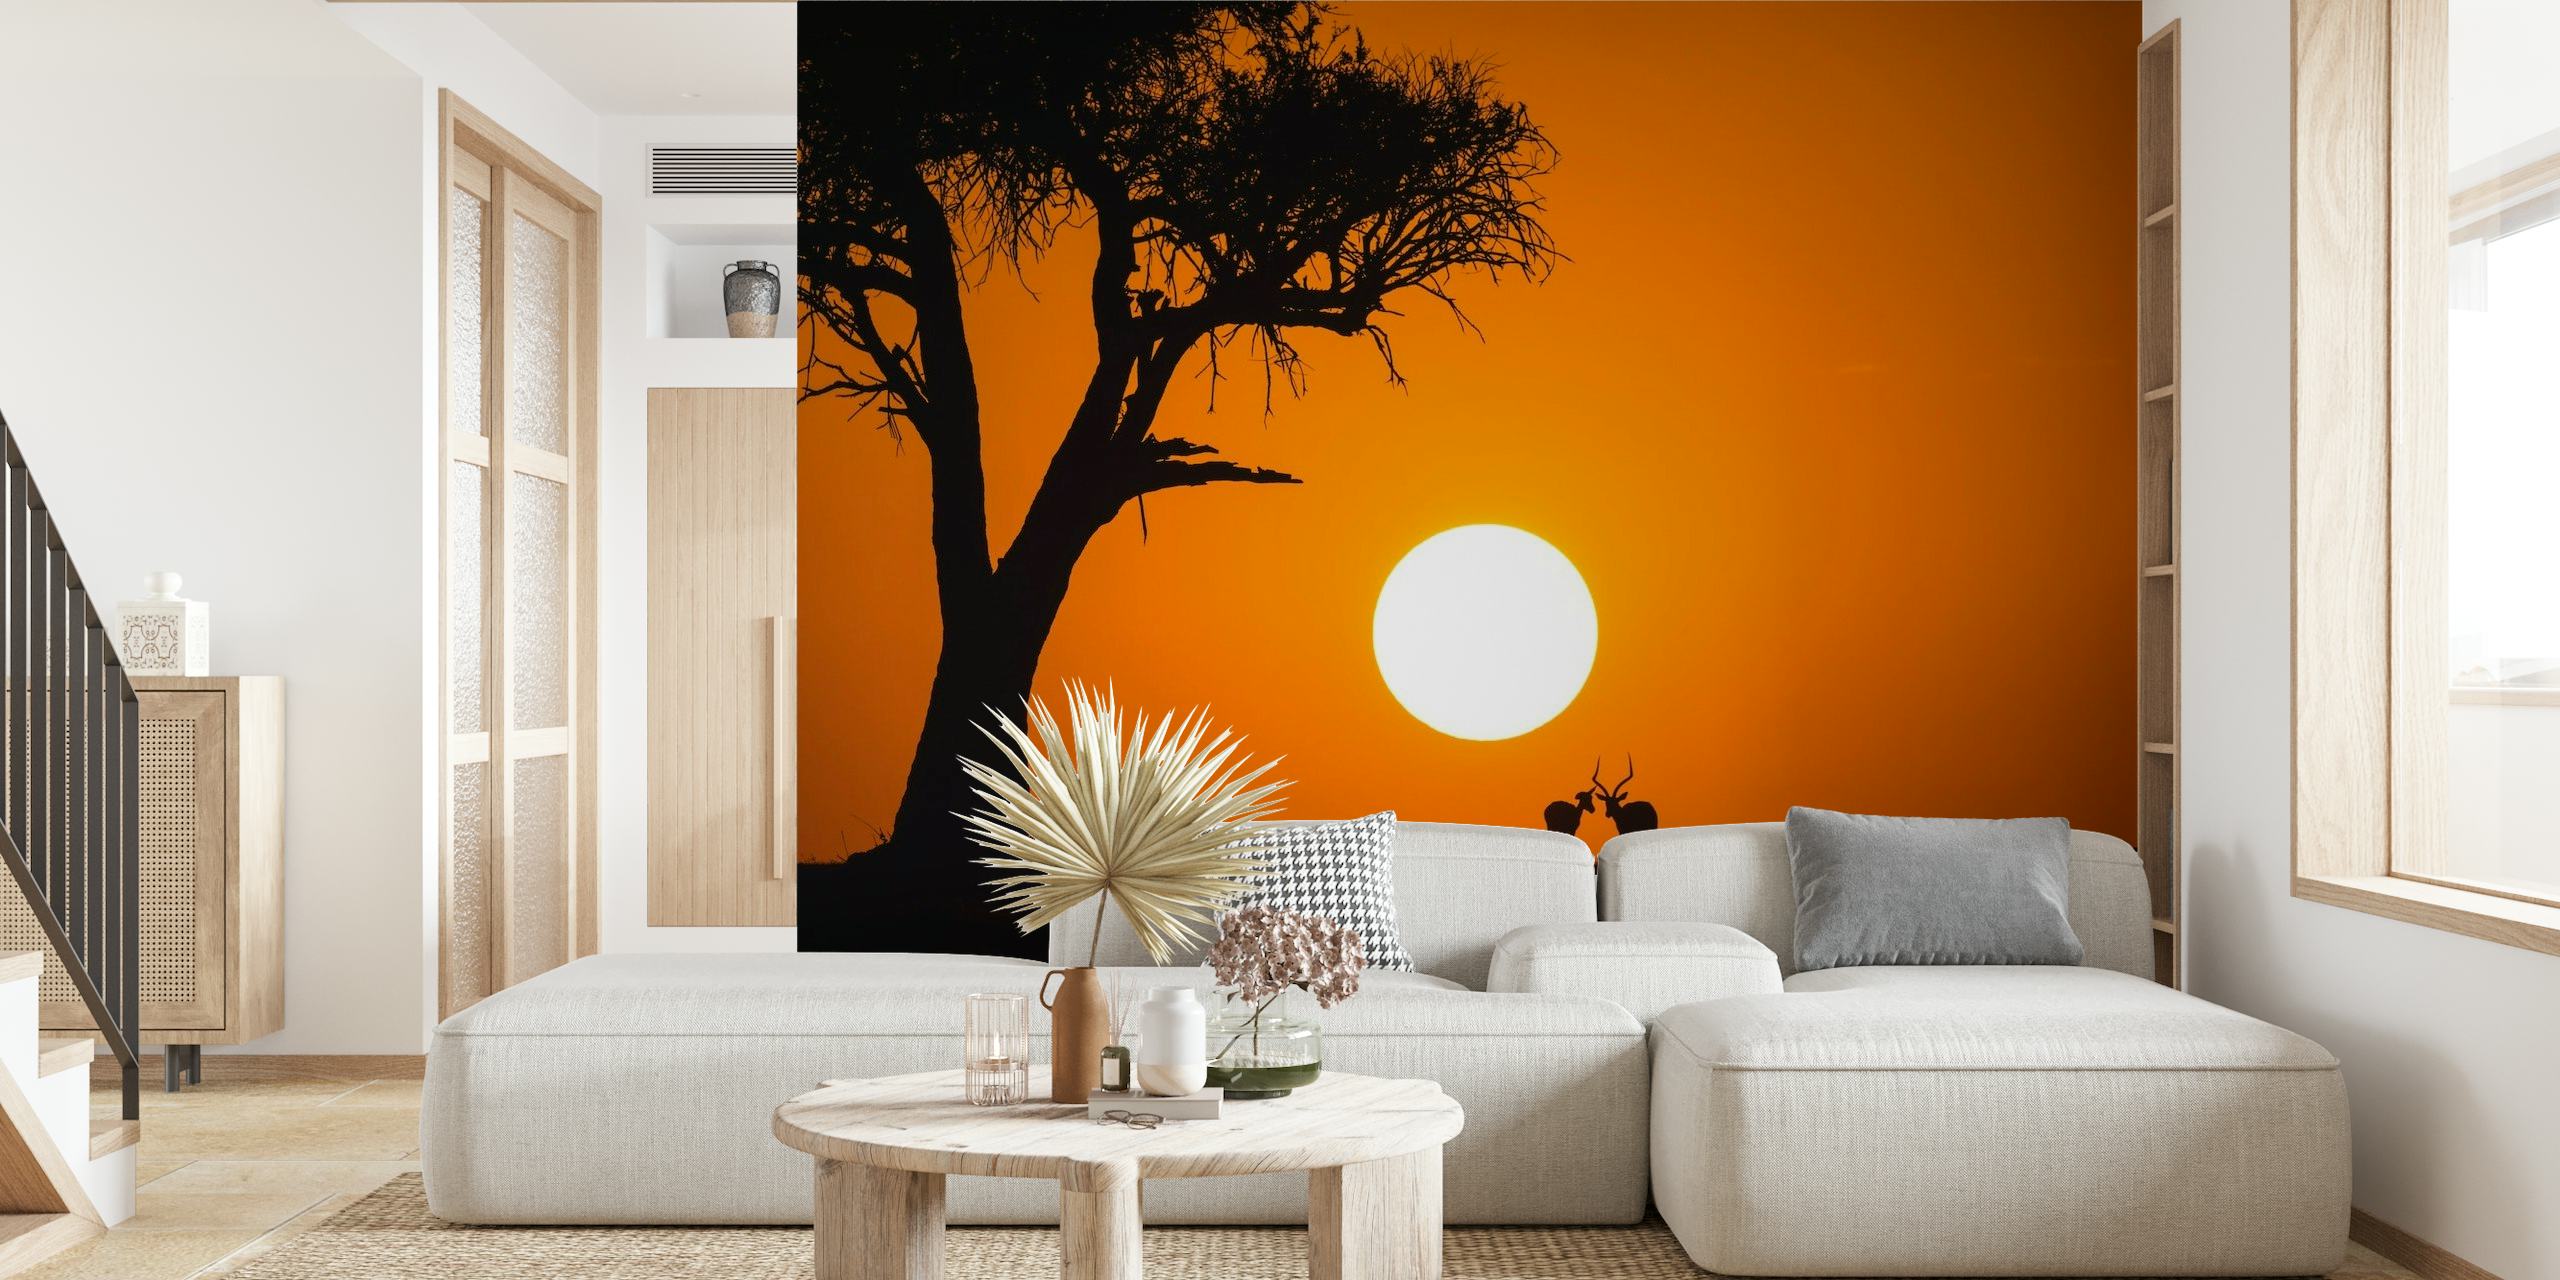 African Sunset papel pintado